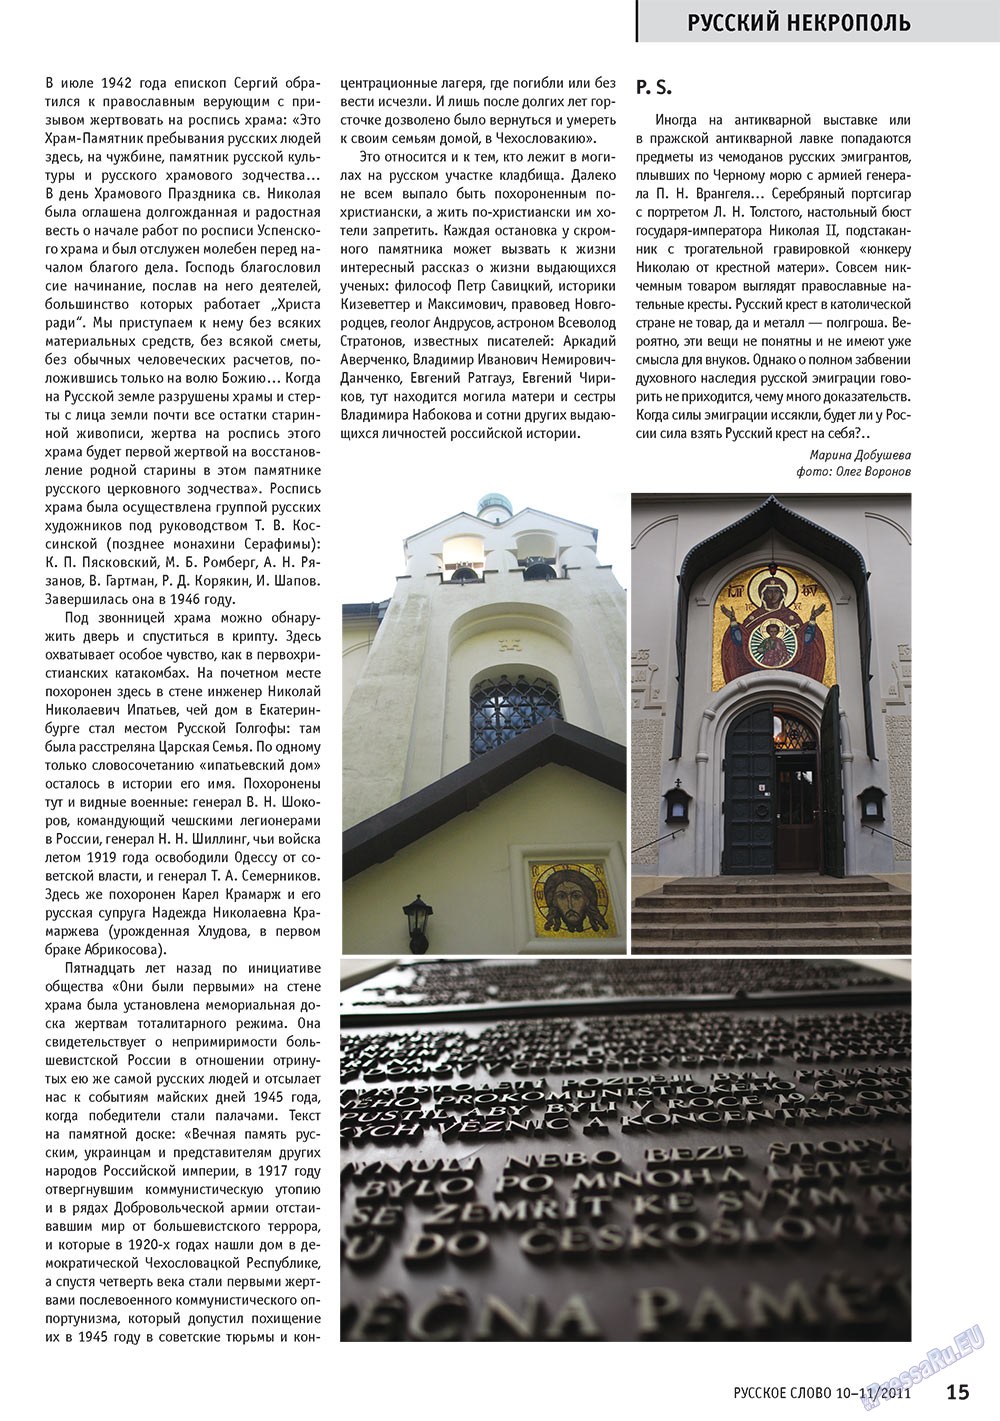 Русское слово (журнал). 2011 год, номер 10, стр. 17